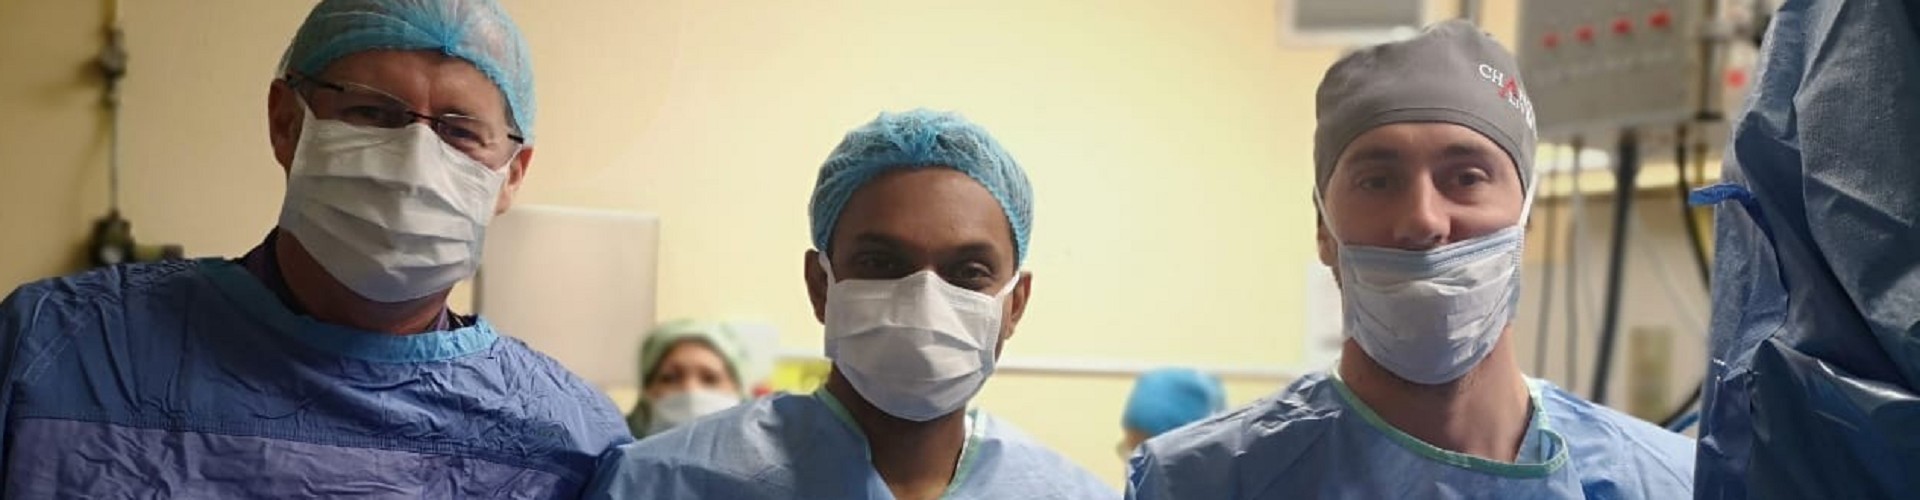 Video Operazione Prostata con Laser | Disfunzione Erettile Cause | Intervento Alla Prostata con Robot da Vinci